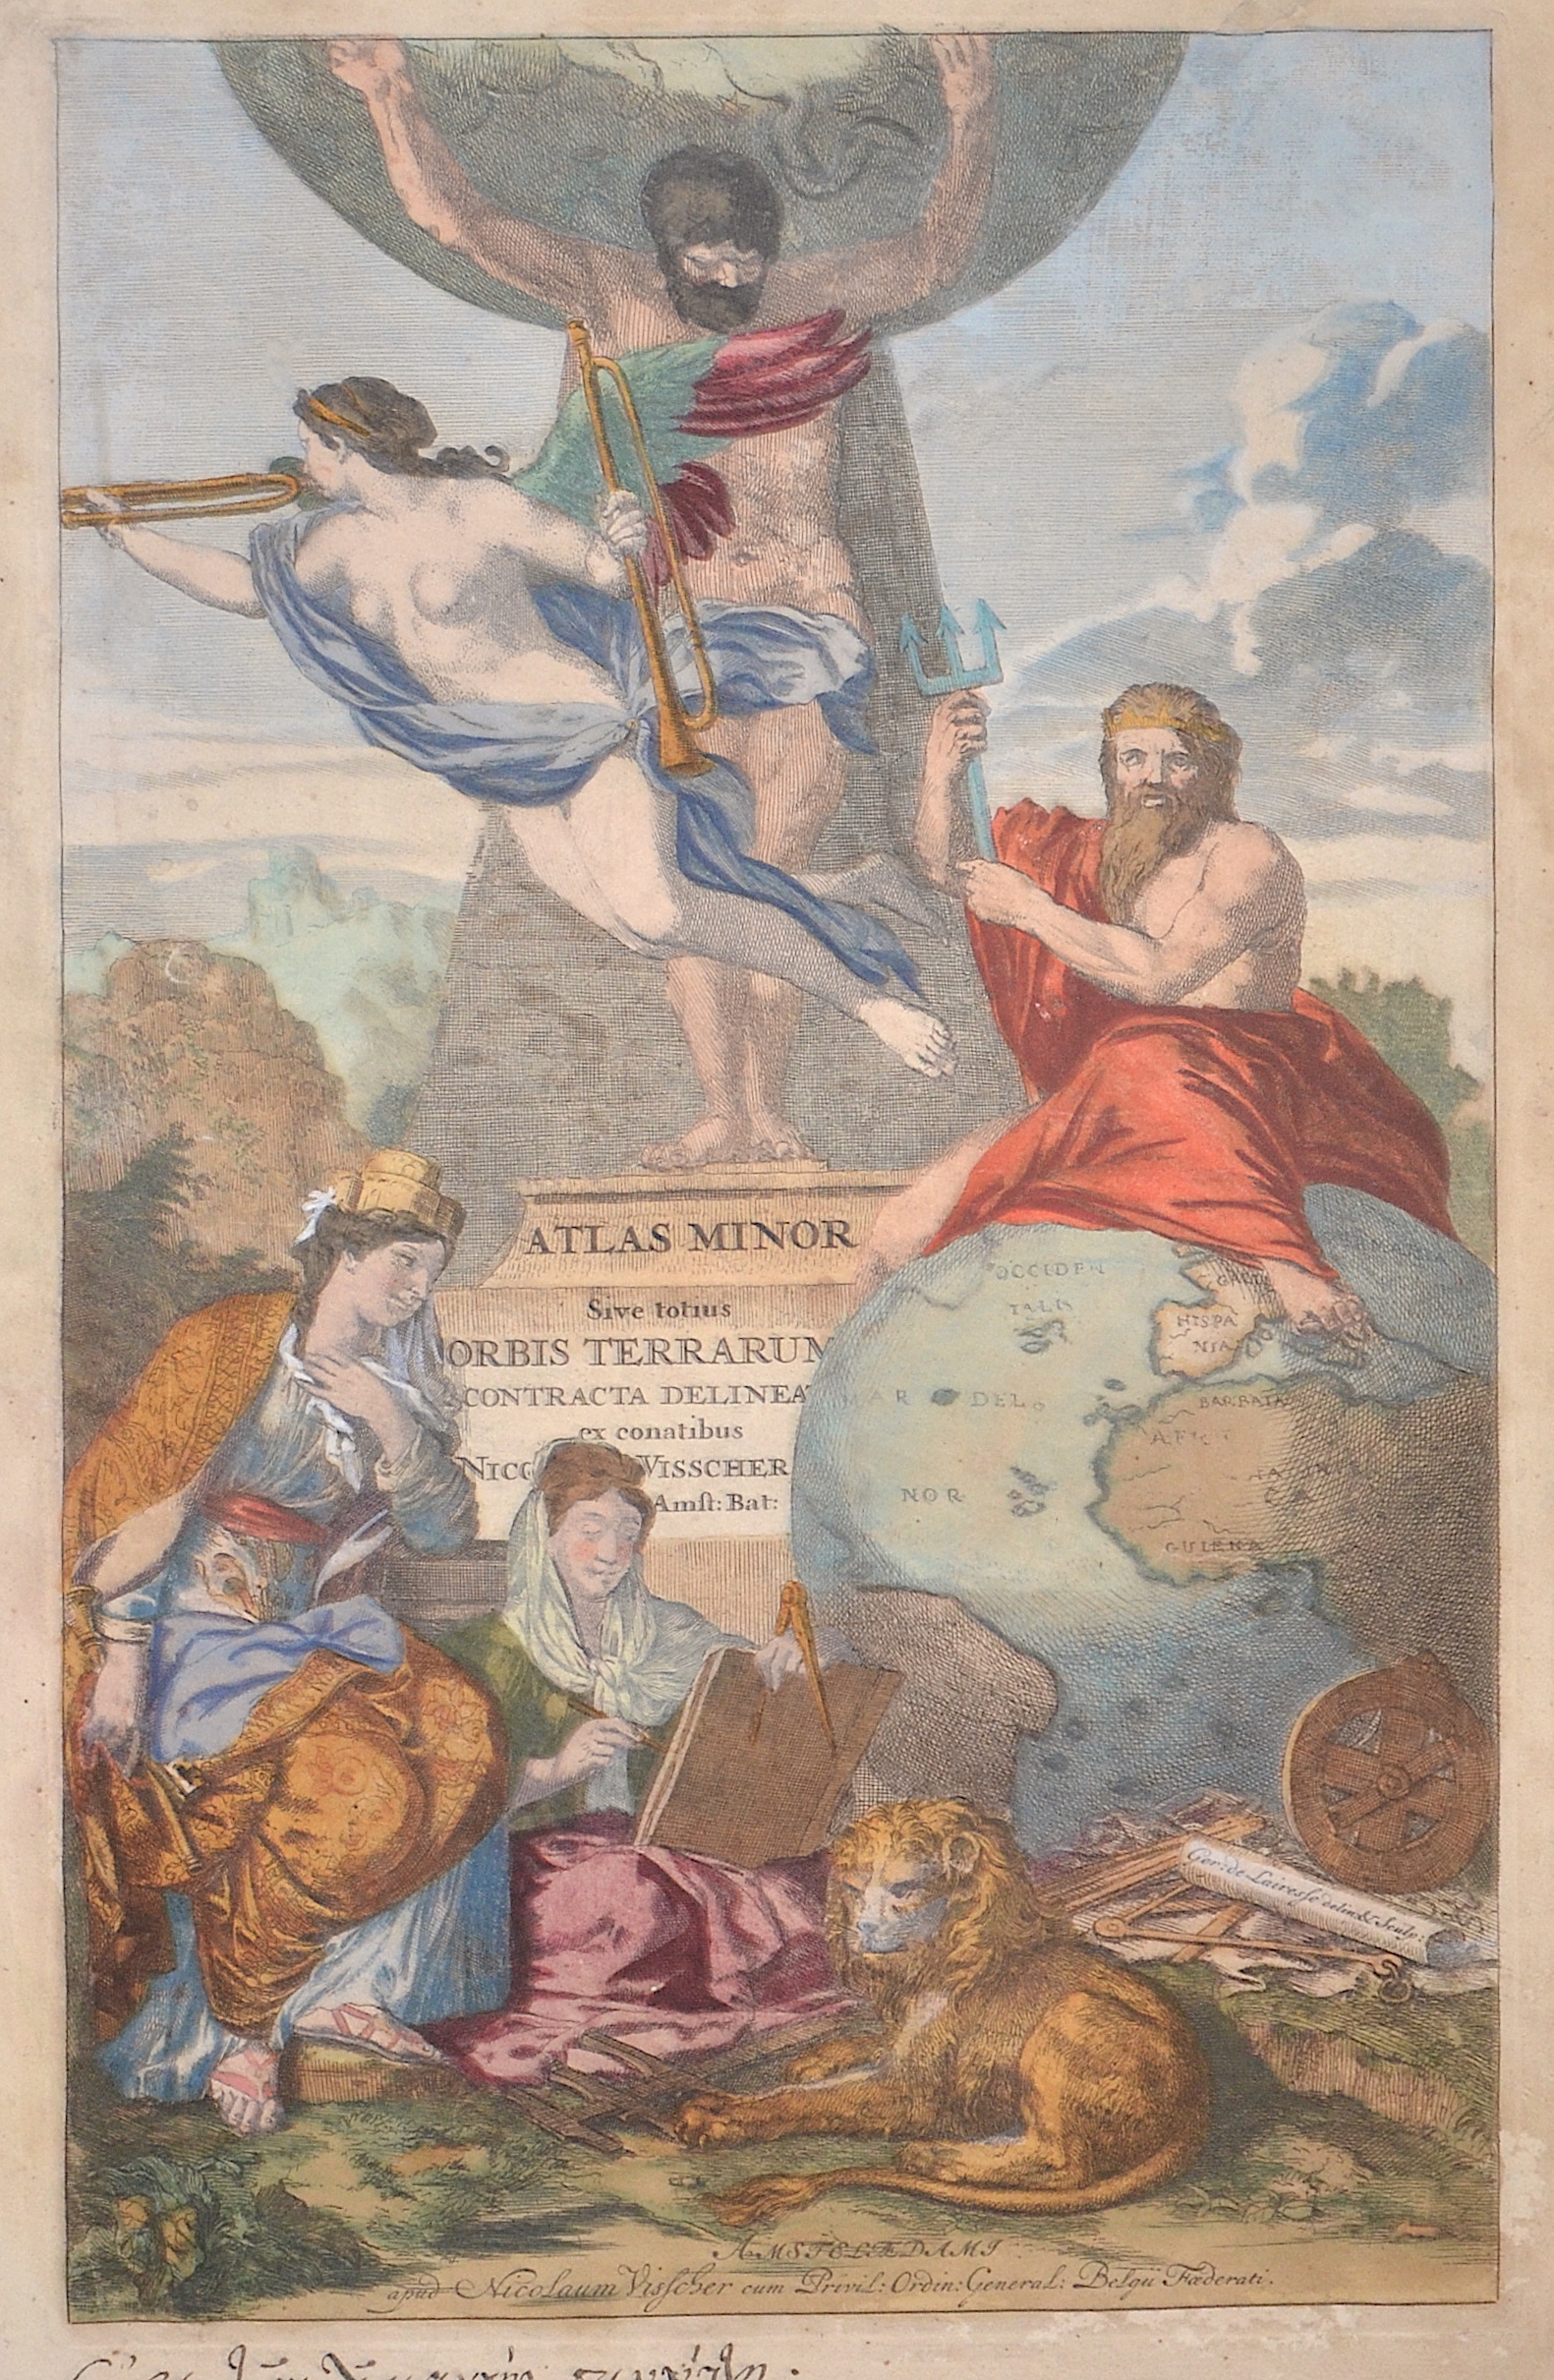 Visscher  Atlas Minor Sive totius Orbis Terrarum Contracta delineat ex conatibus